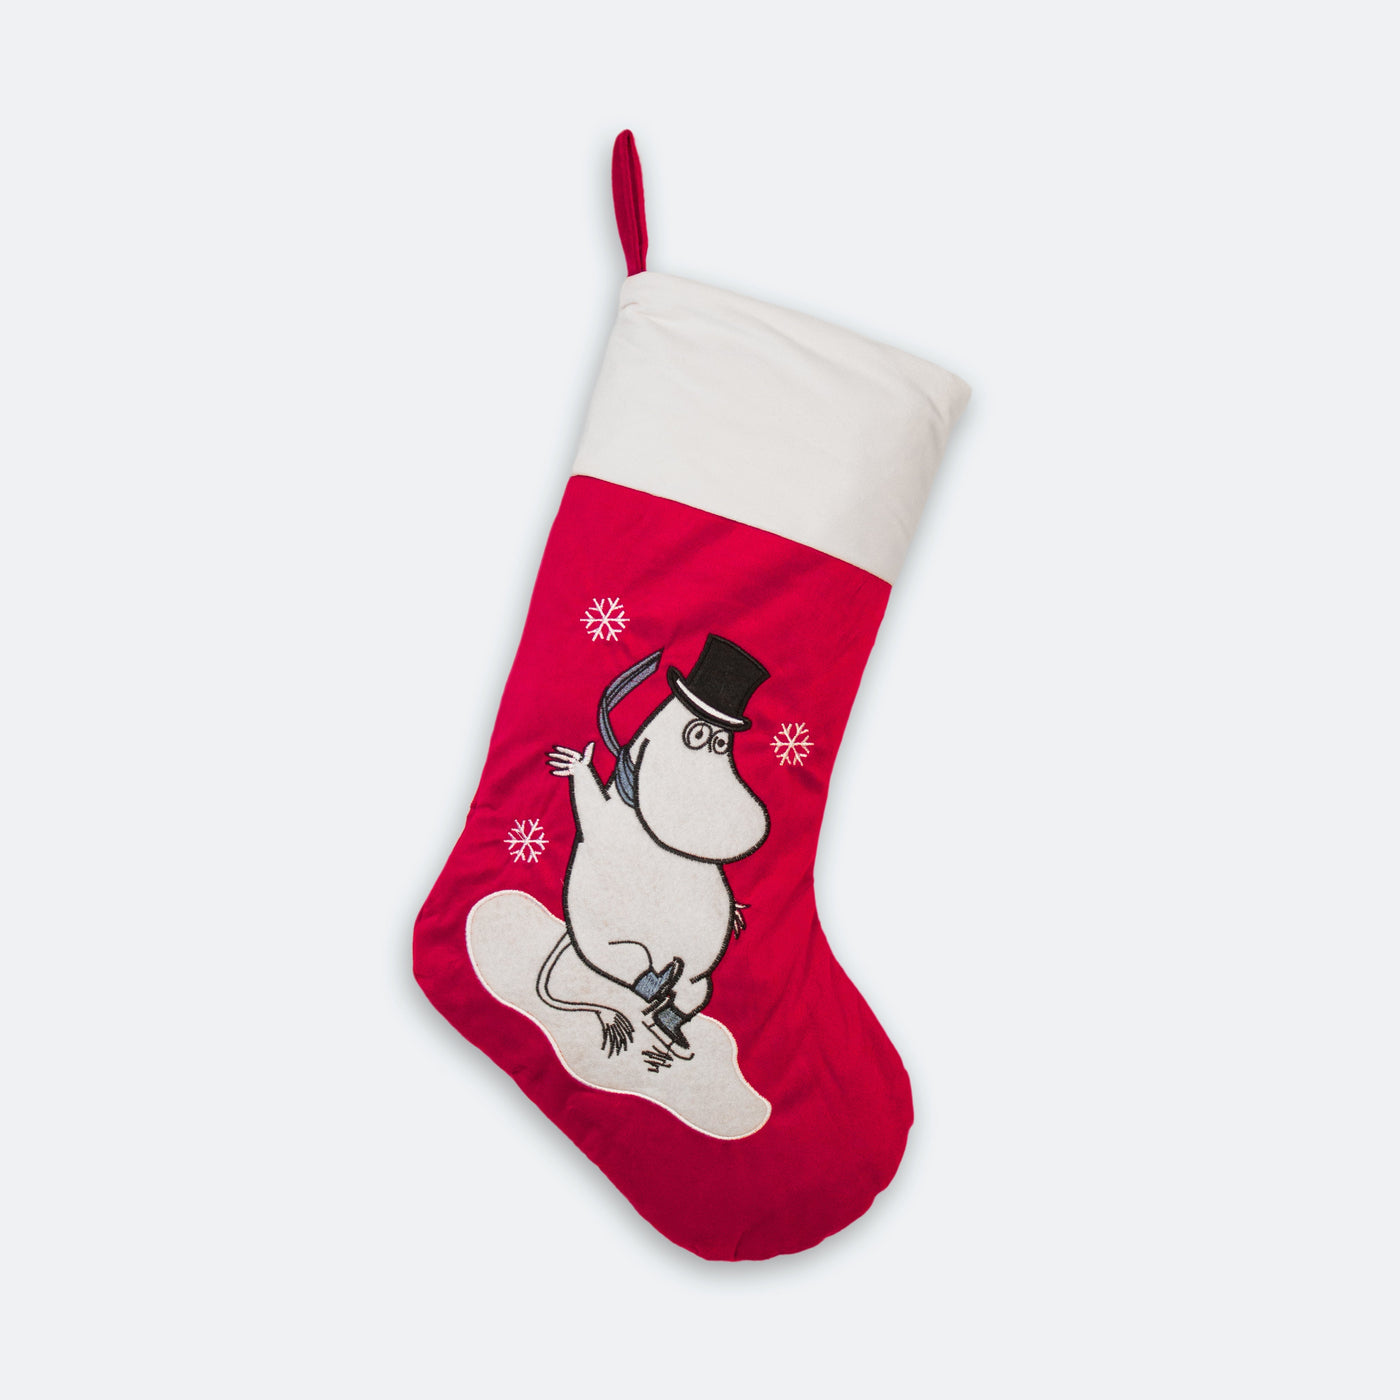 Moominpappa Christmas Stocking